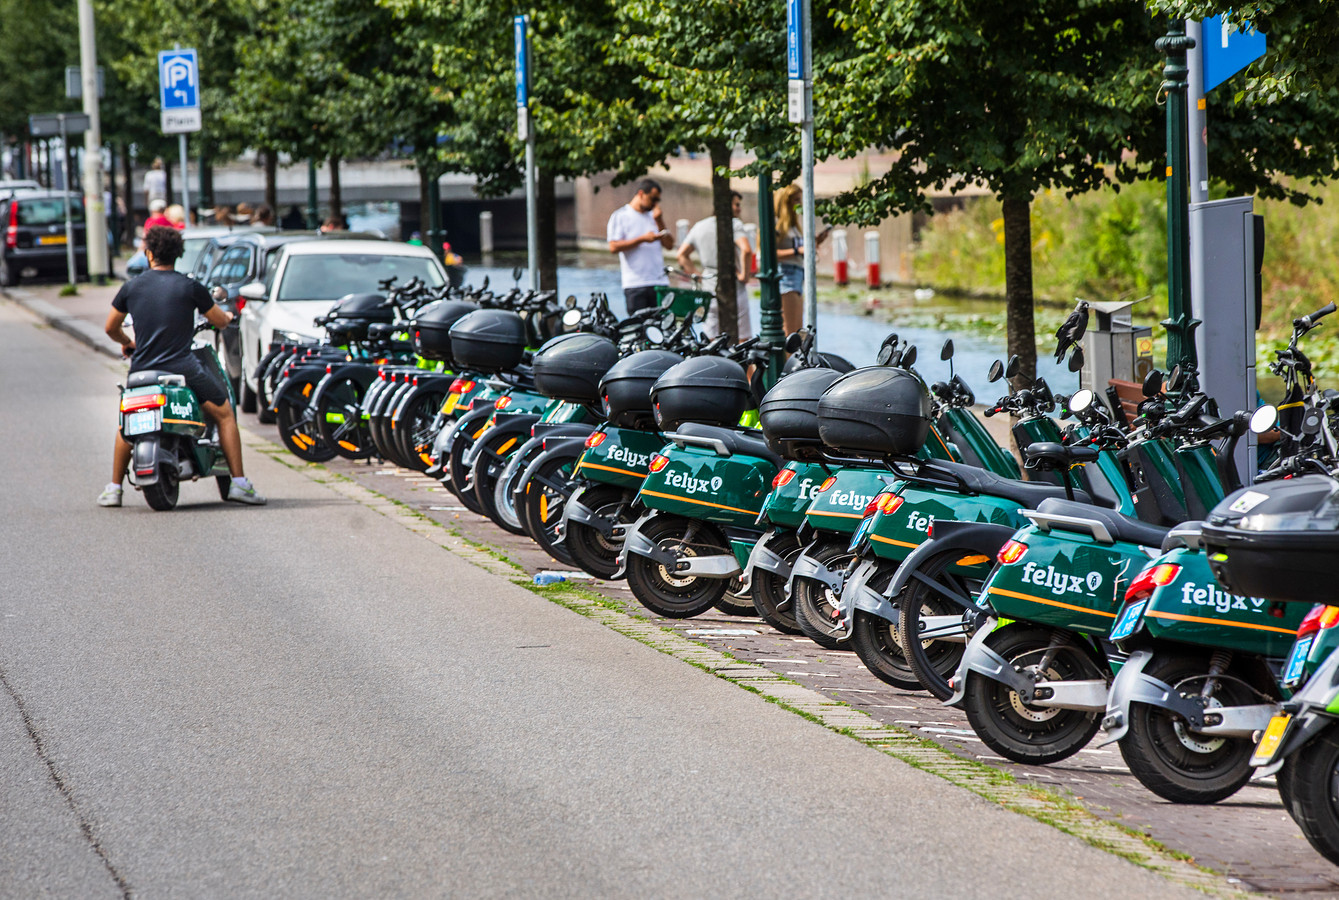 Deelscooters, huurscooters en elektrische scooters van het bedrijf Felyx op de Prinsessegracht in Den Haag.